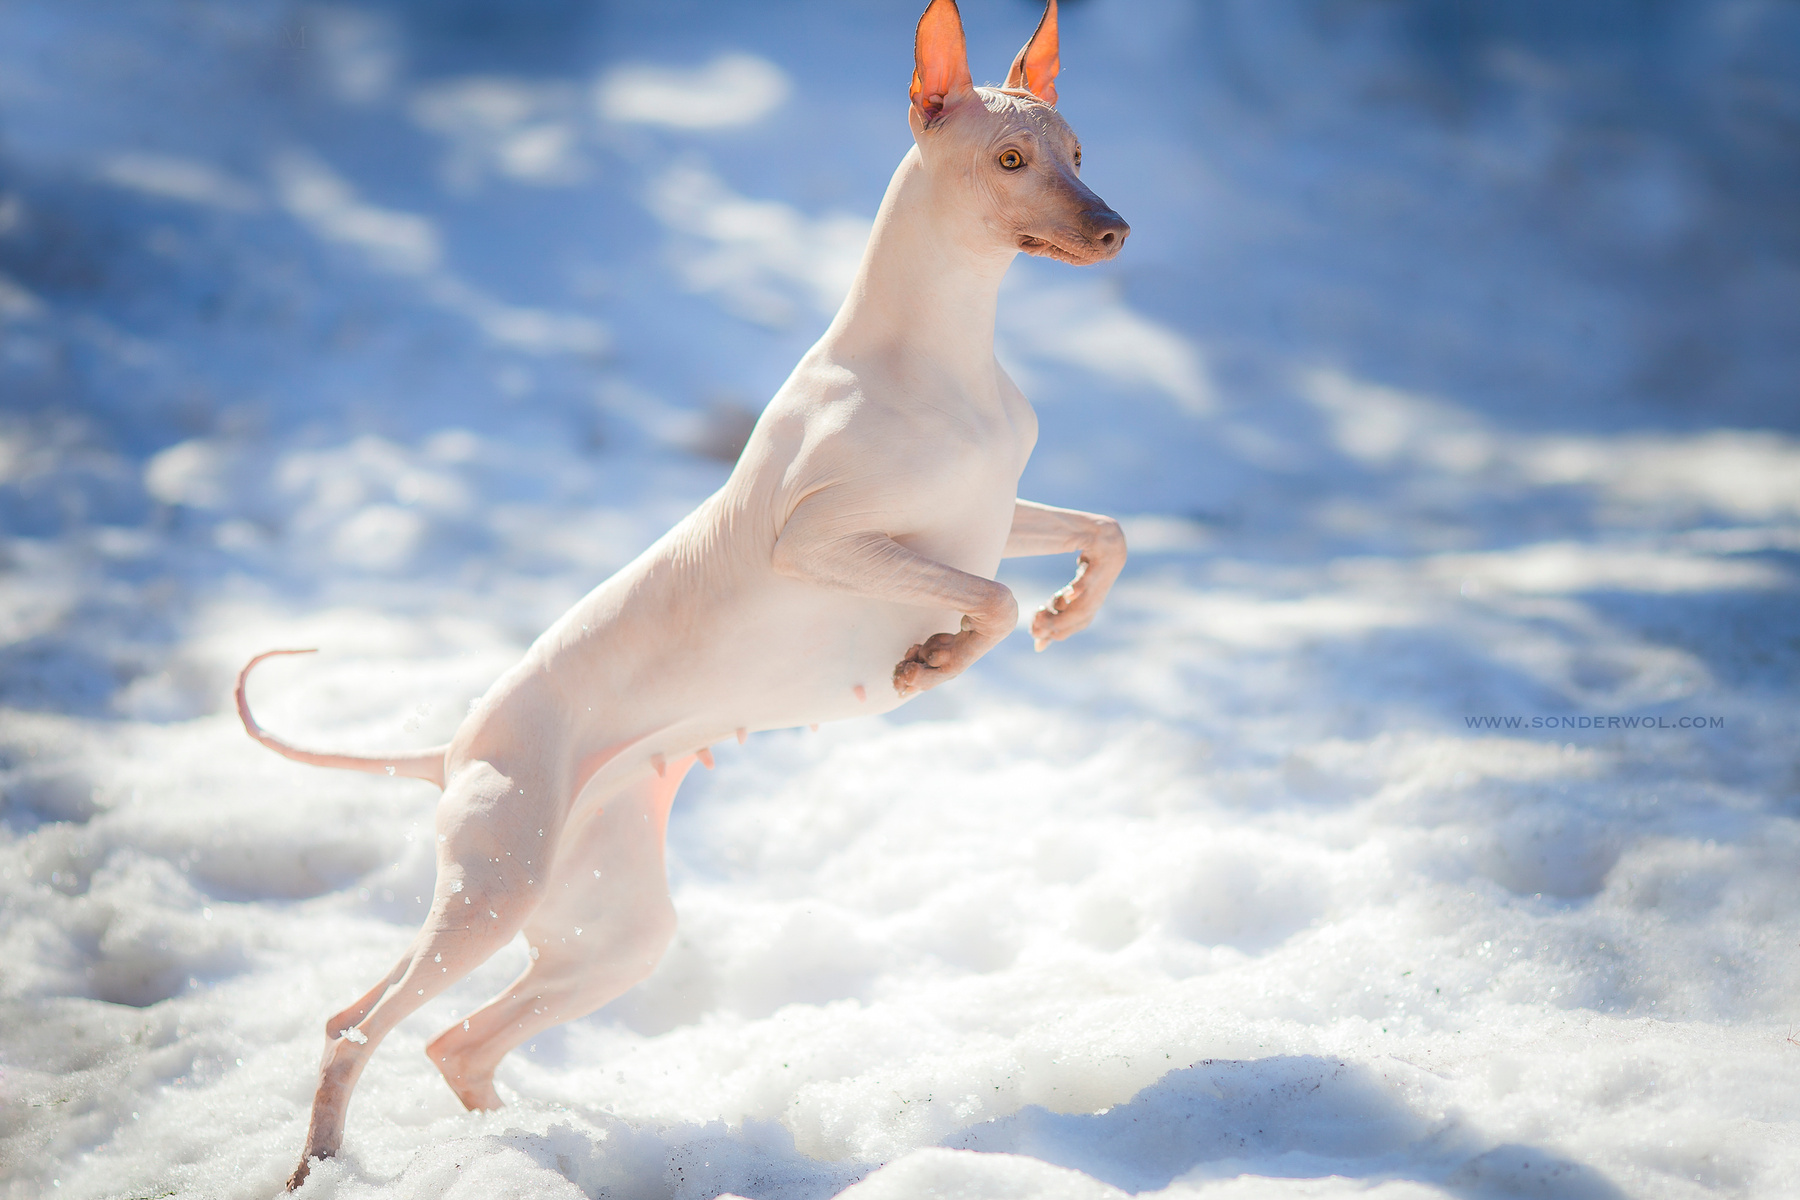 снежинка)) собака перуанская голая данте ксоло лысые собаки Фарра